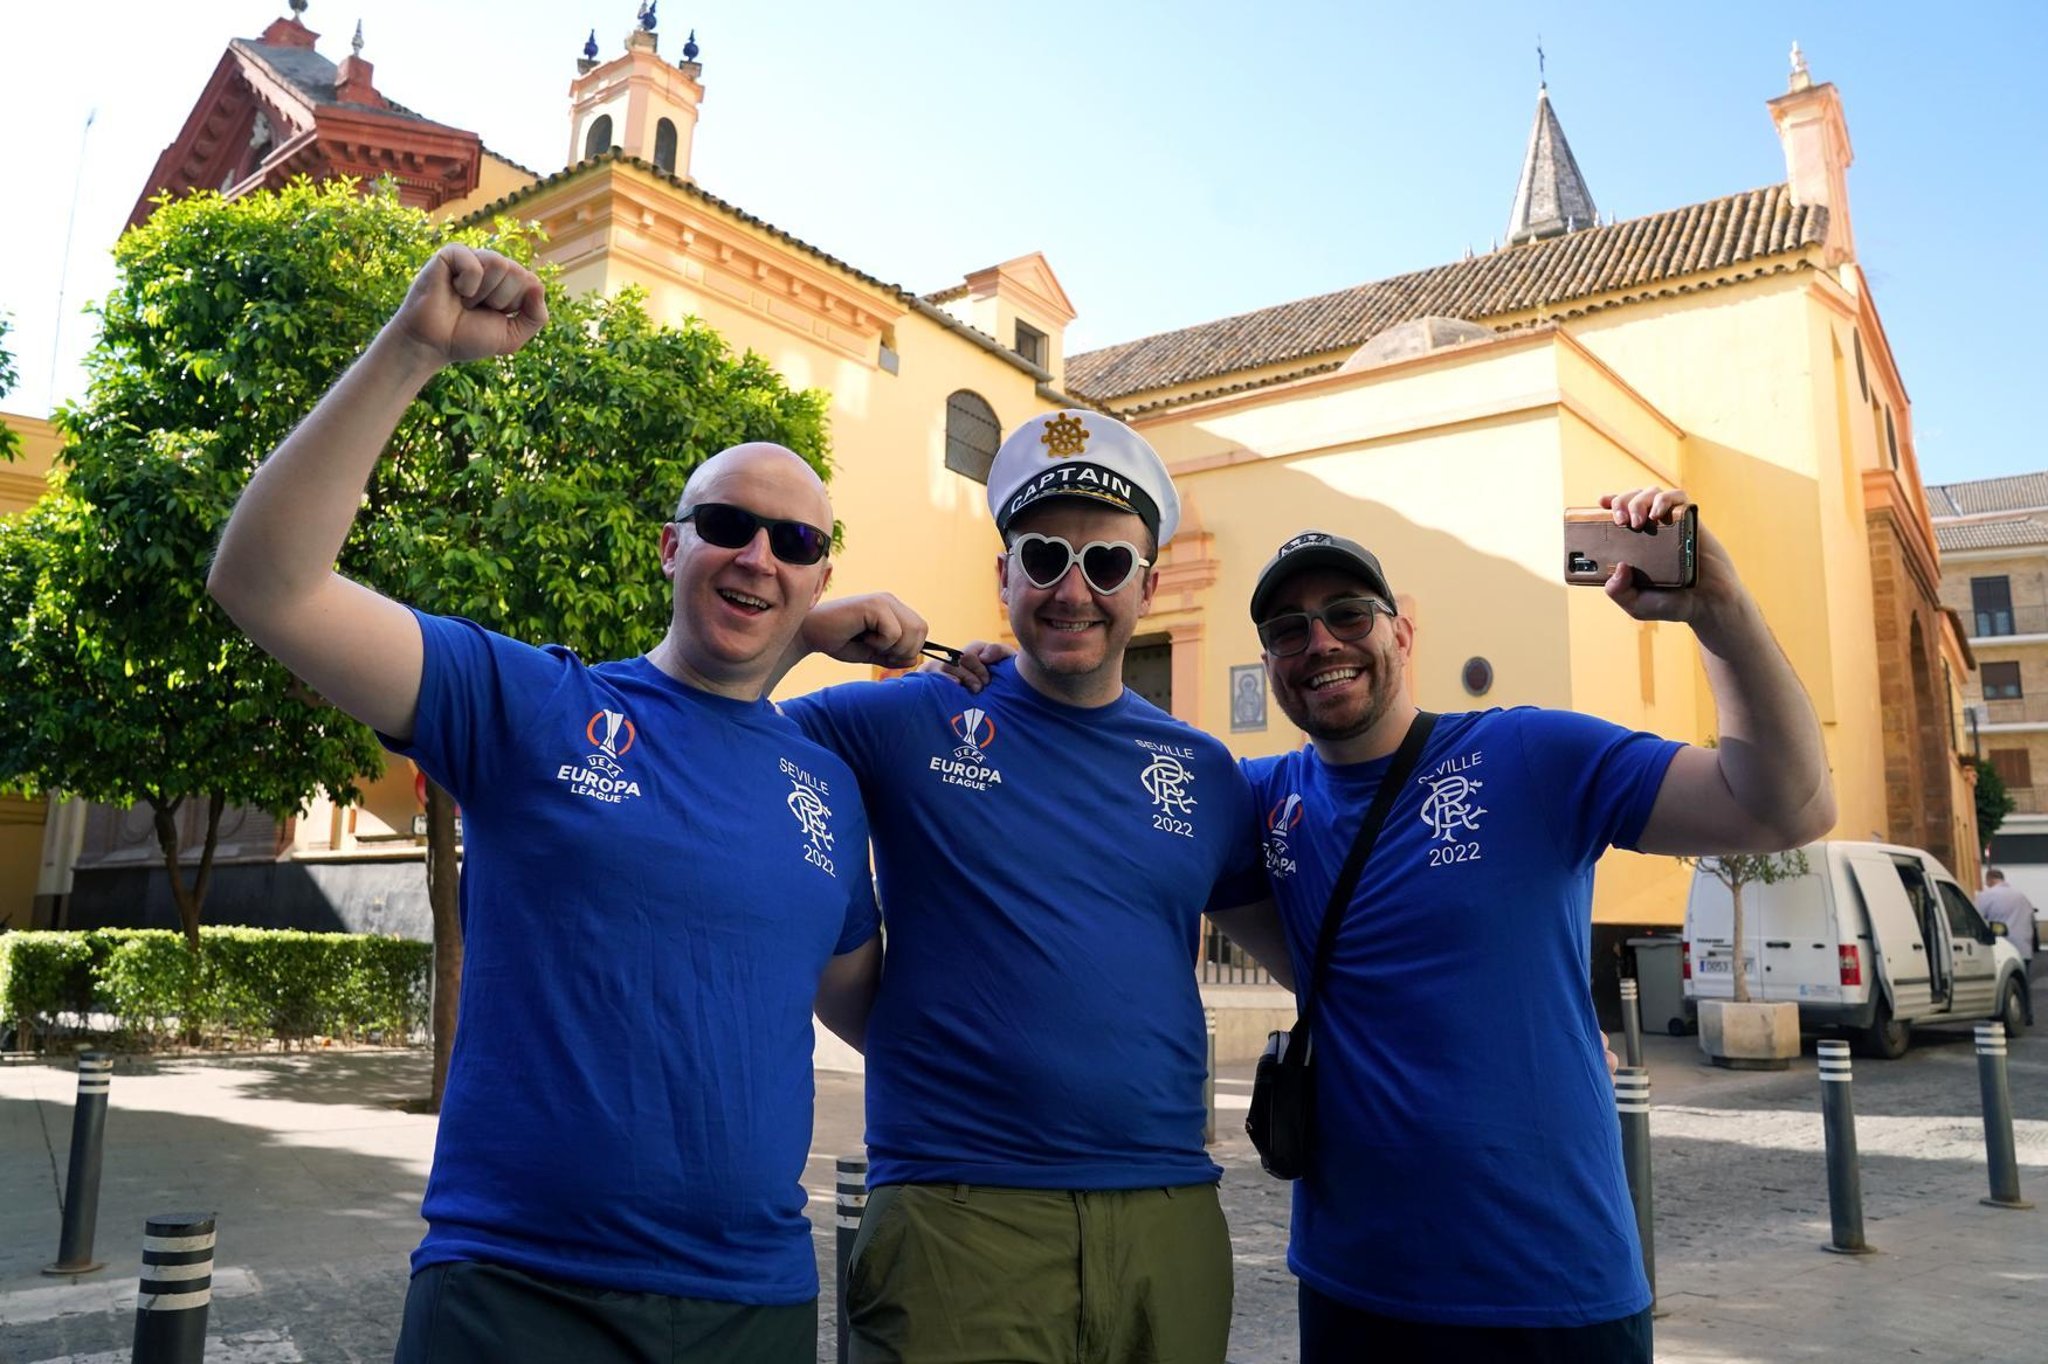 Rangers fans descend on Seville as anticipation builds for Europa League final